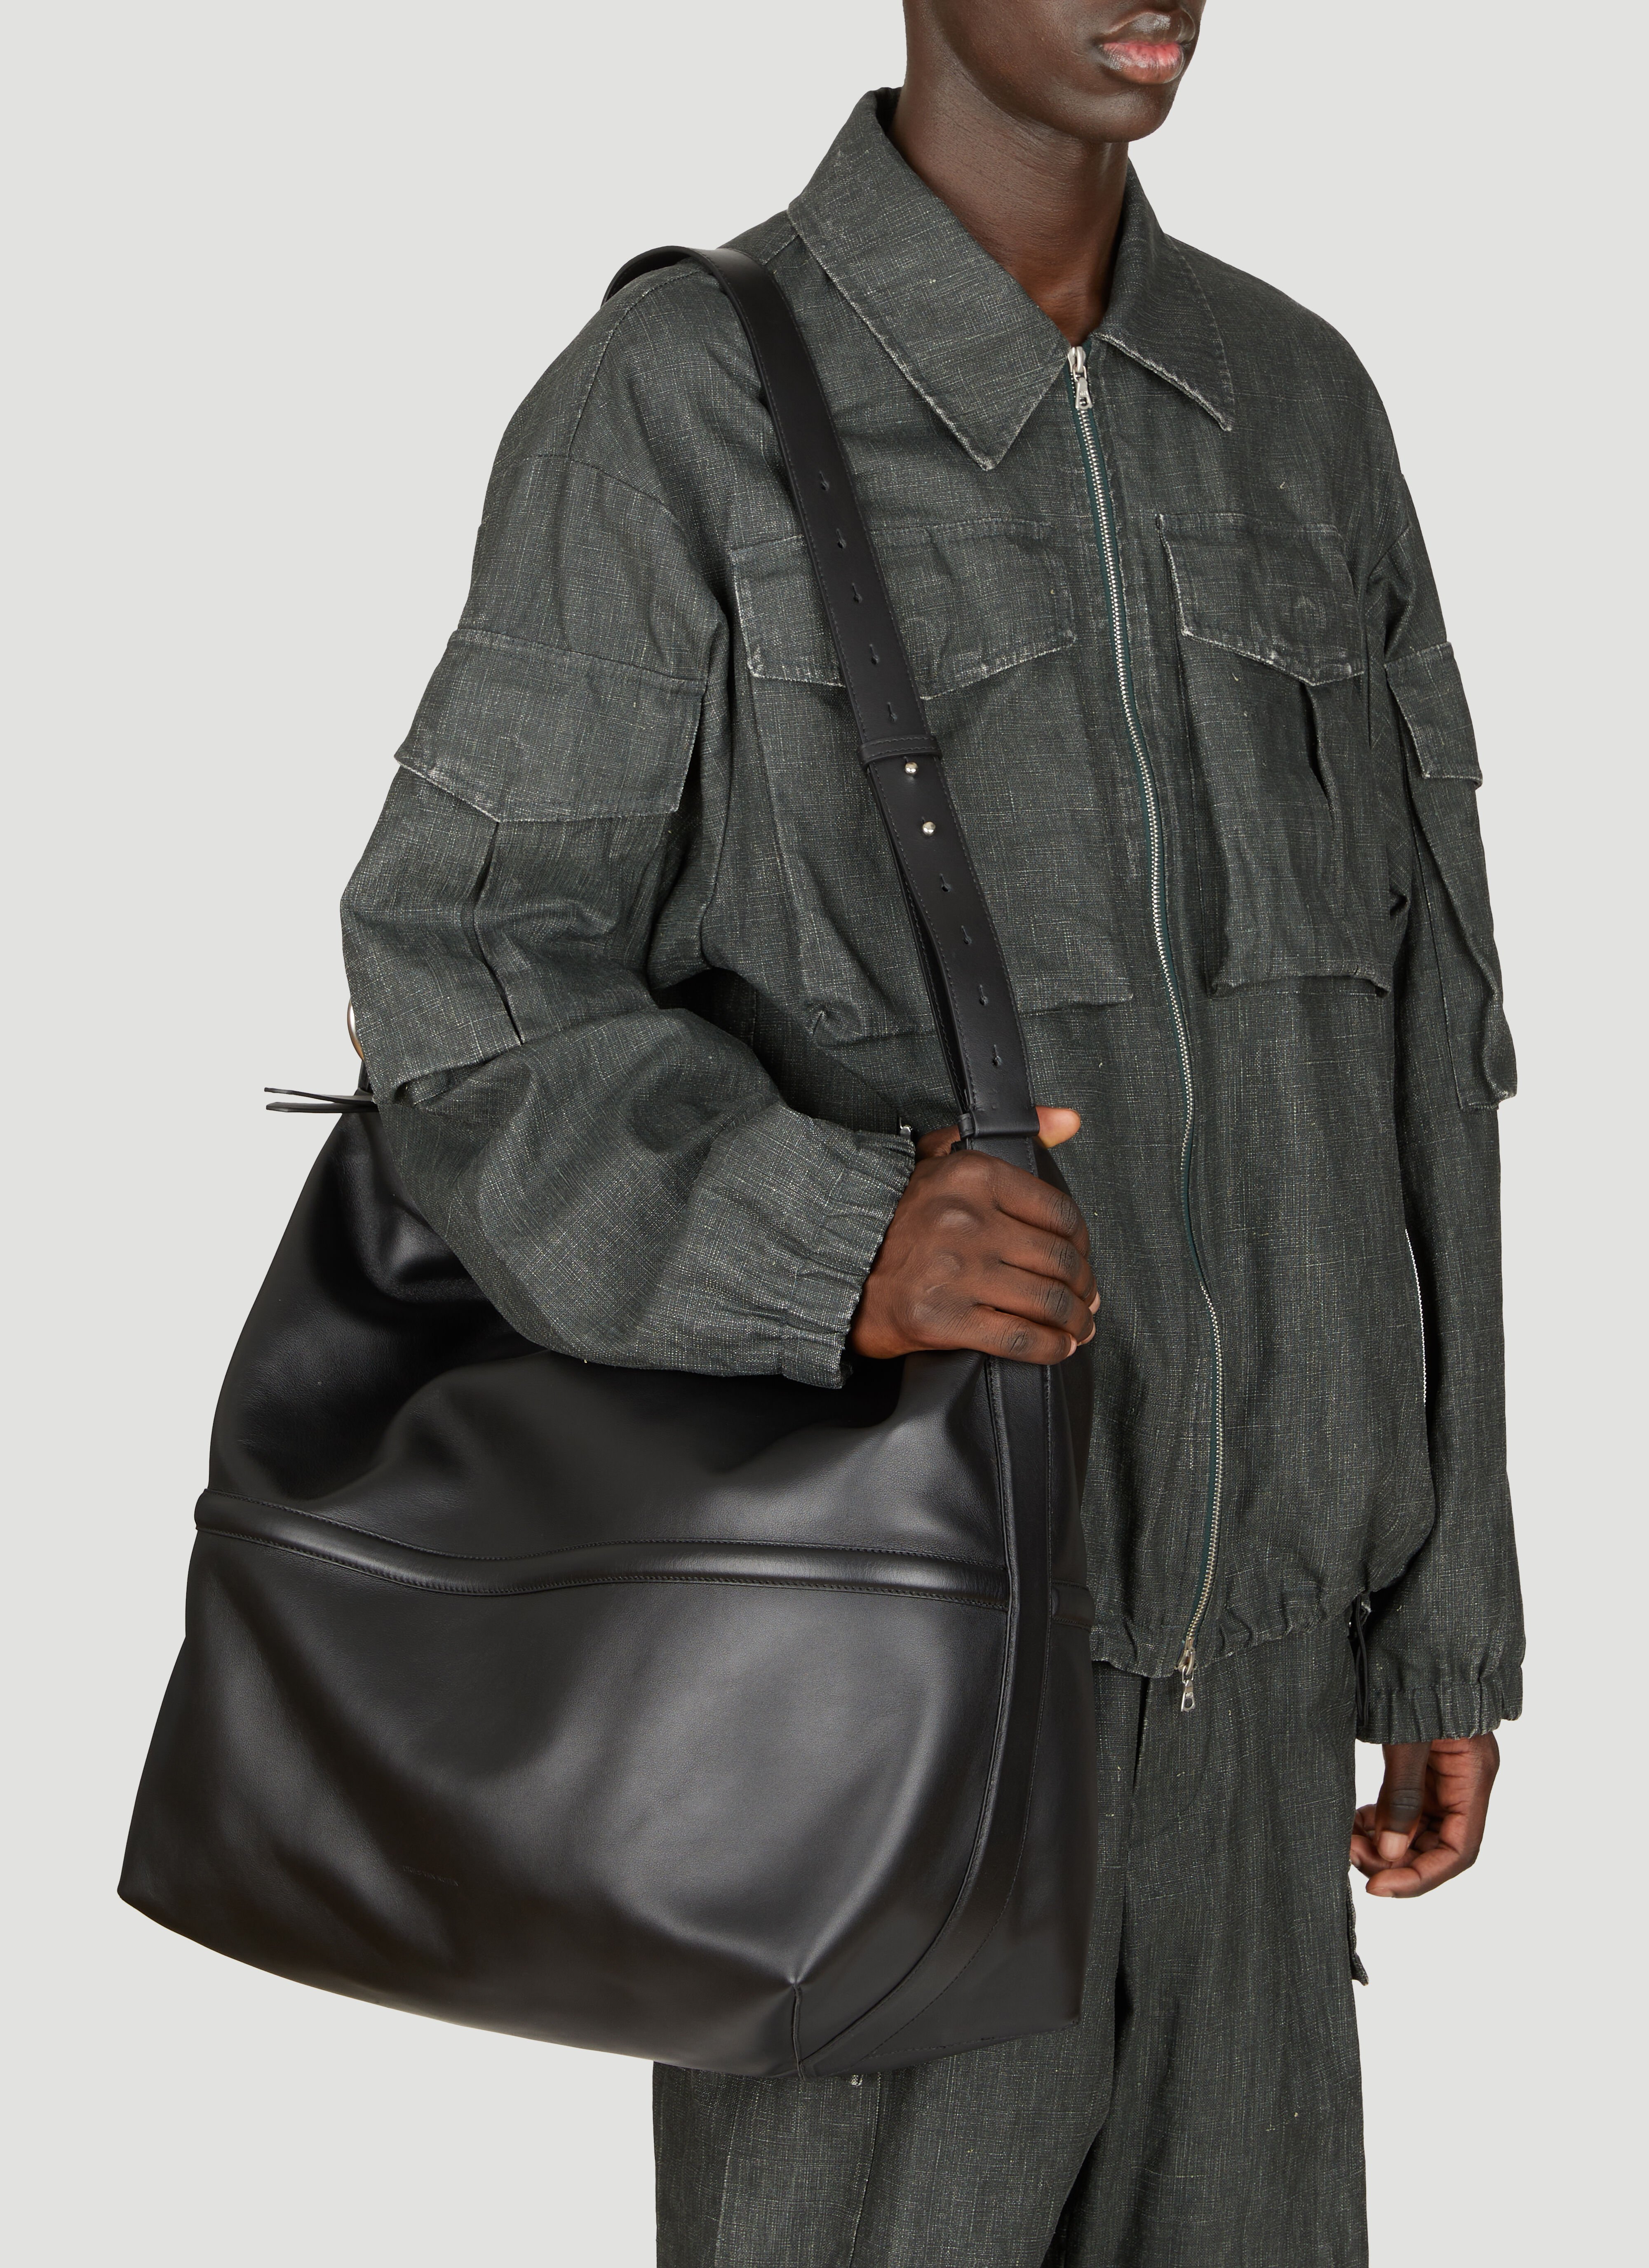 Dries Van Noten Leather Crossbody Bag Black dvn0156043